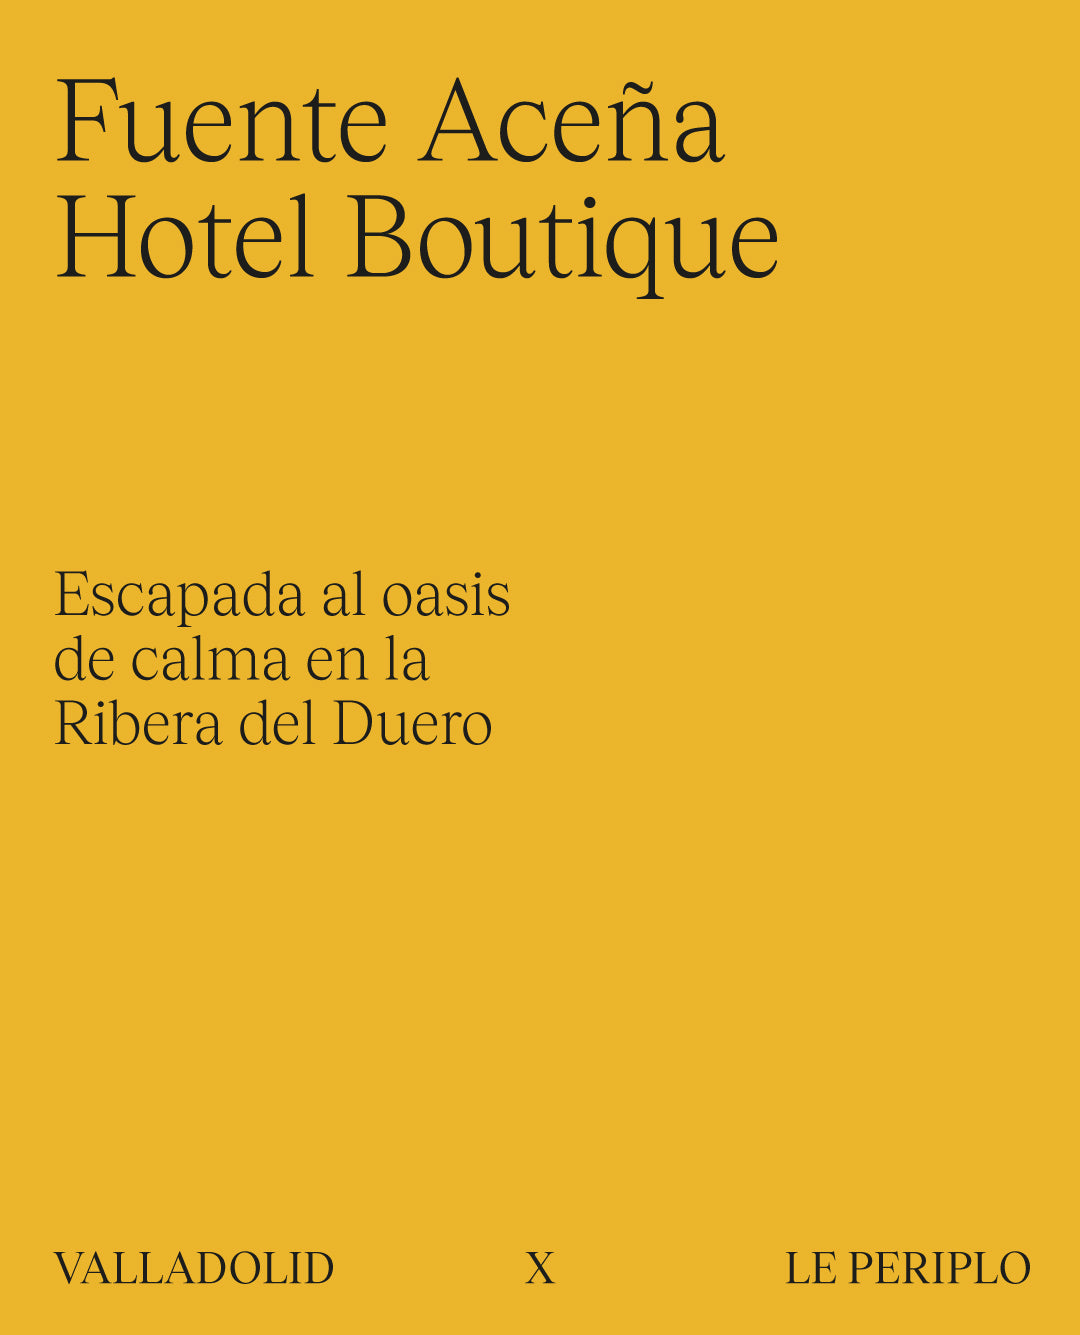 Guía exclusiva de Fuente Aceña Hotel Boutique